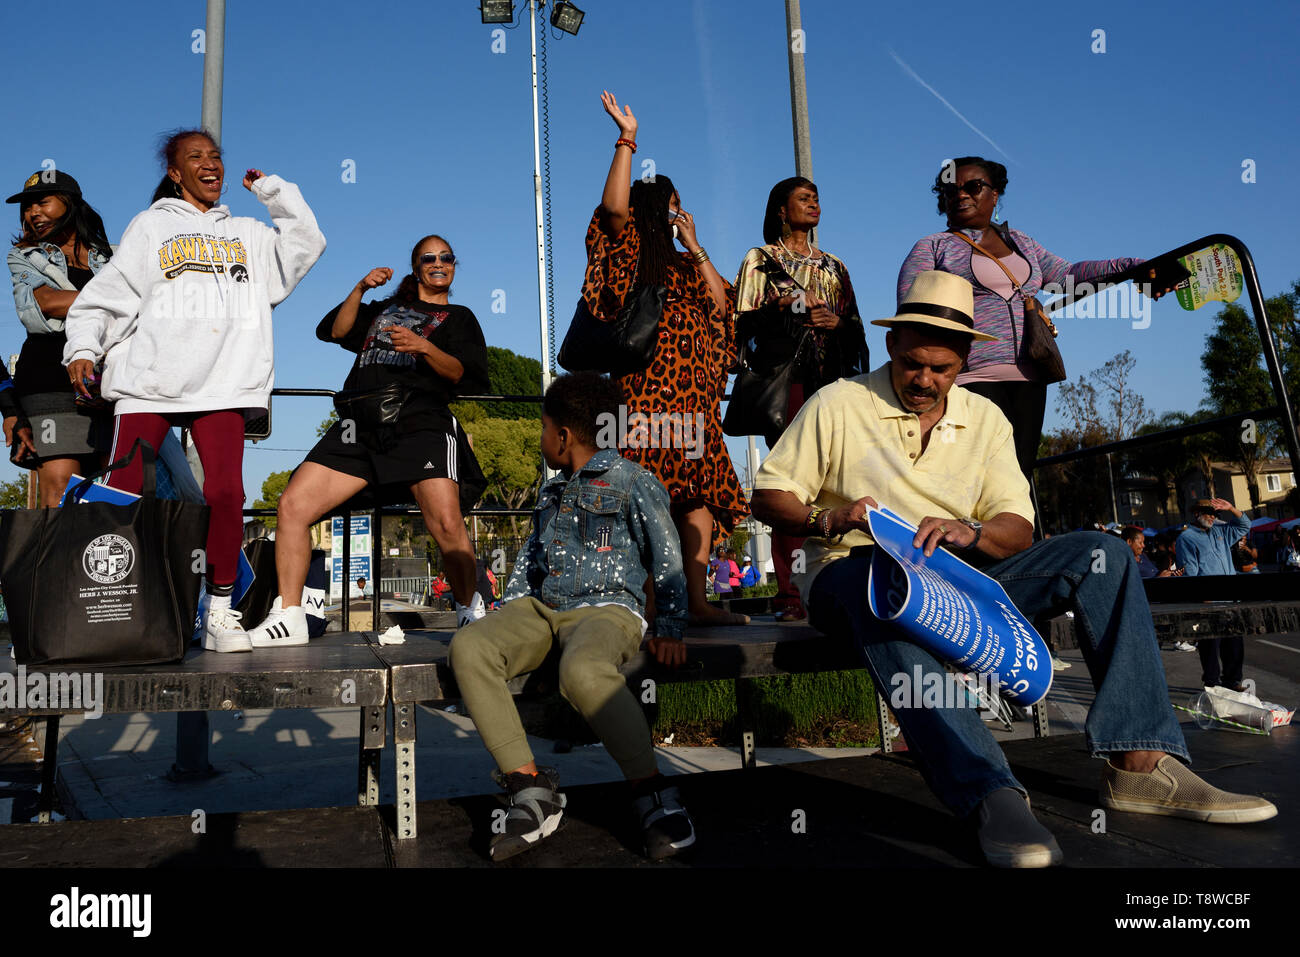 Vu les gens s'amuser pendant le festival. Les gens se rassemblent dans le cadre d'un festival pour célébrer le changement de route de rodéo Boulevard Obama, en l'honneur de l'ancien président américain Barack Obama à Los Angeles, Californie. Banque D'Images